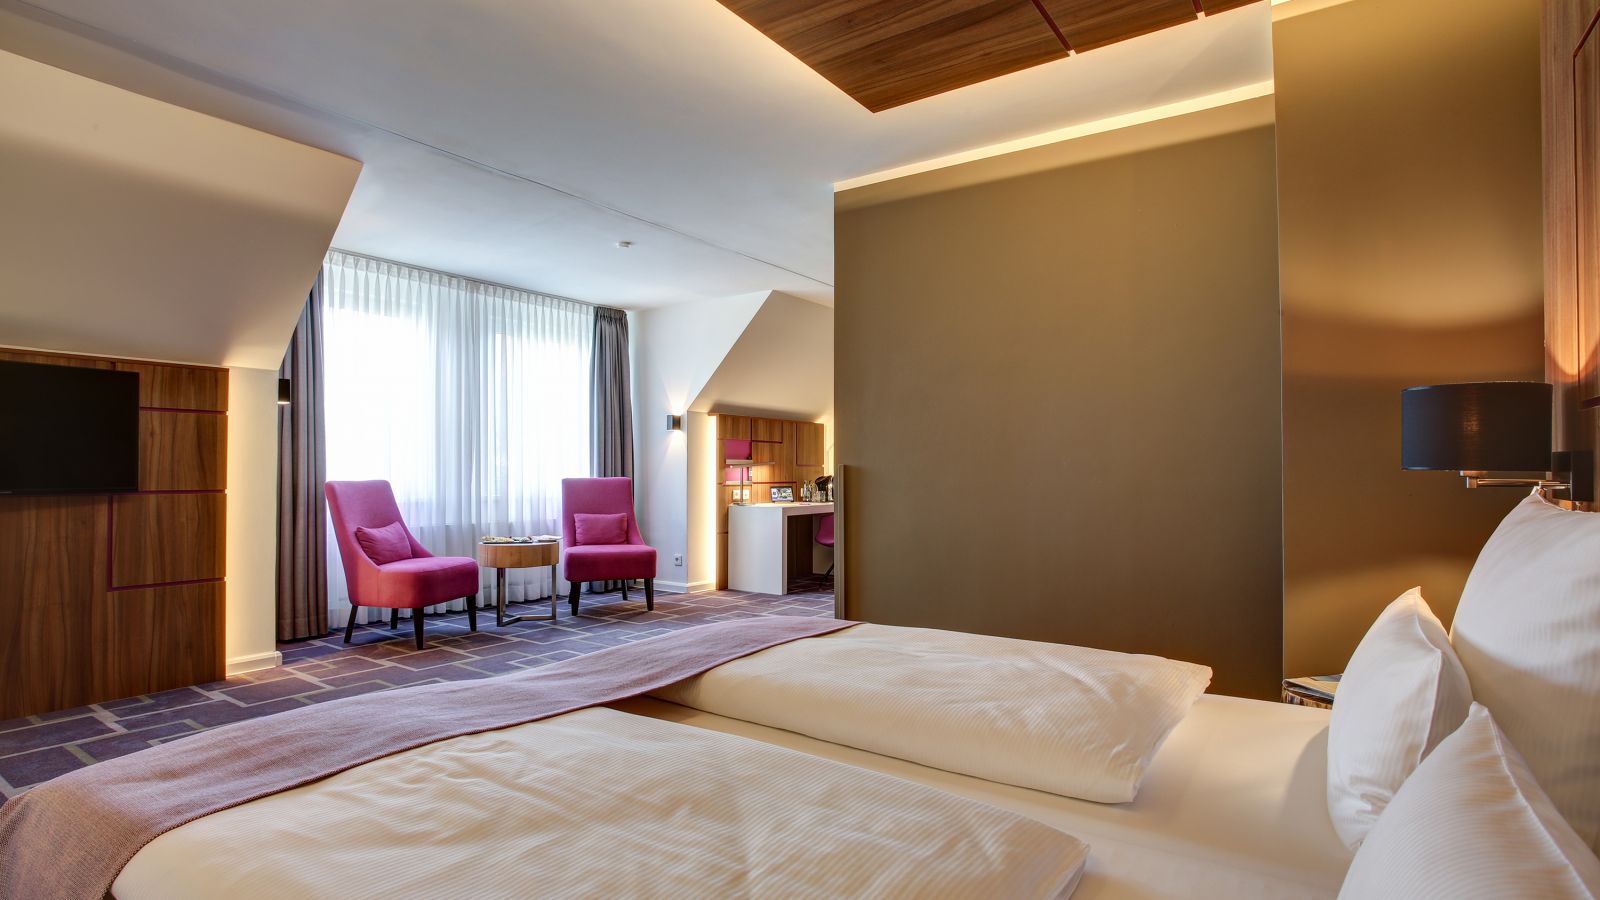 Verschaffen Sie sich einen Überblick über die verschiedenen Zimmerkategorien im FourSide Hotel Braunschweig